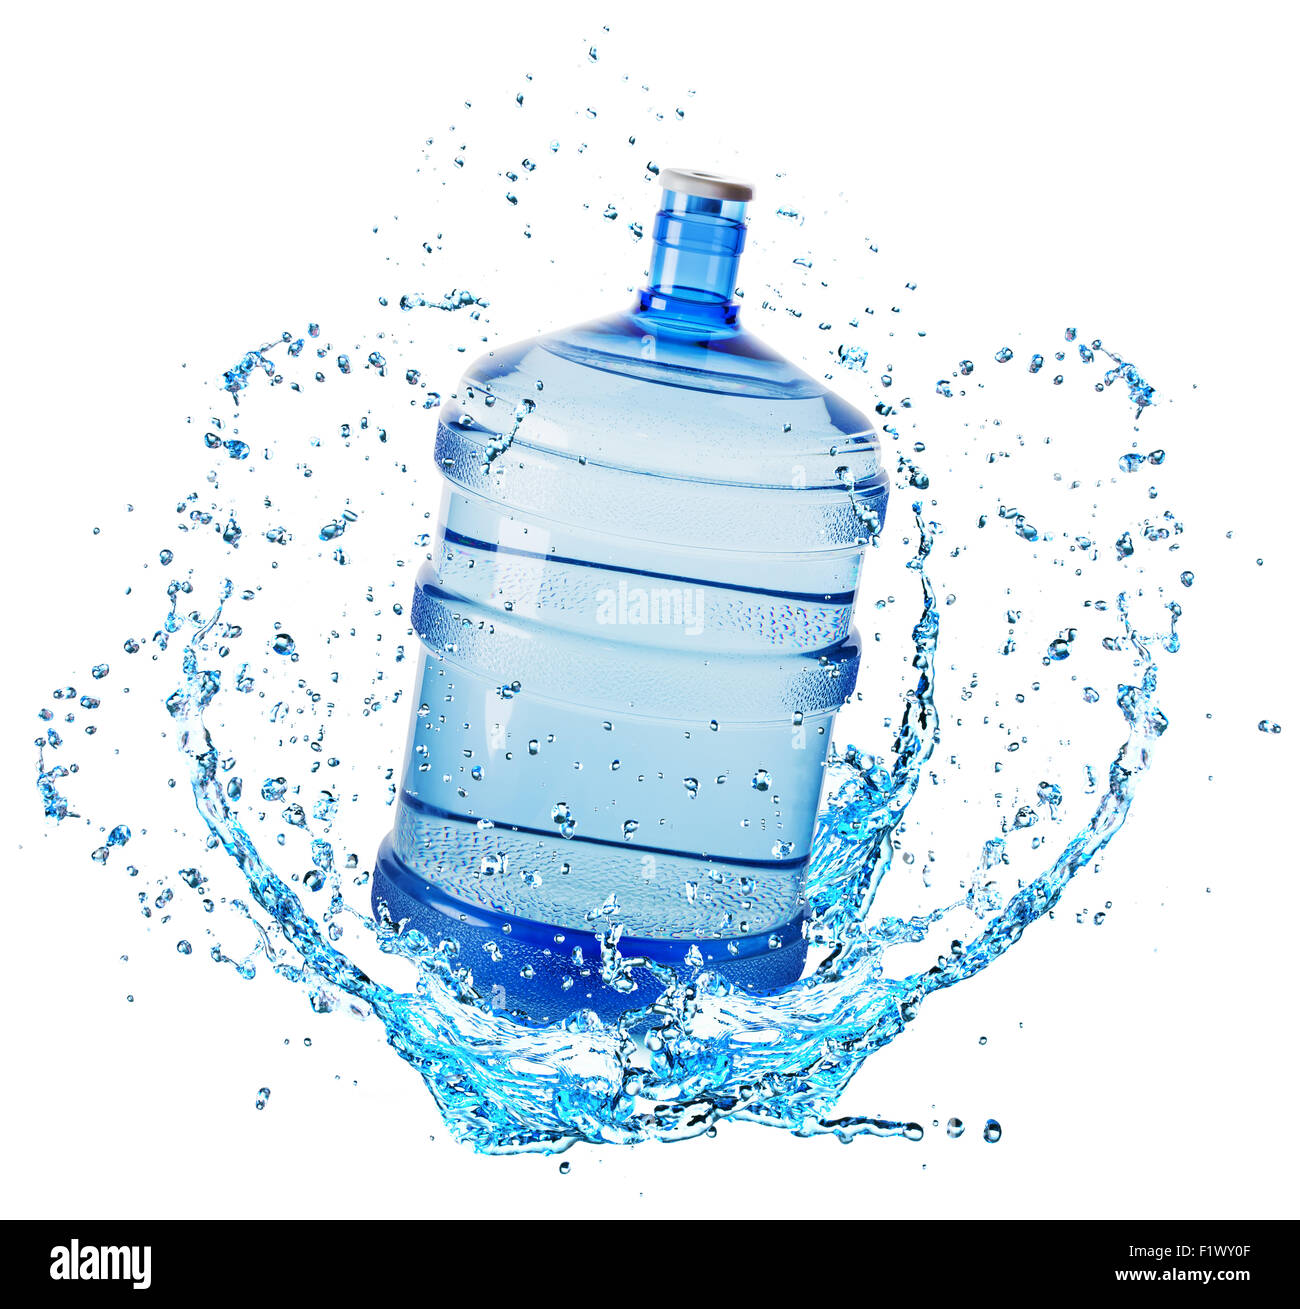 botella pequeña de agua de plástico transparente en el aire con fondo  blanco aislado Stock Photo